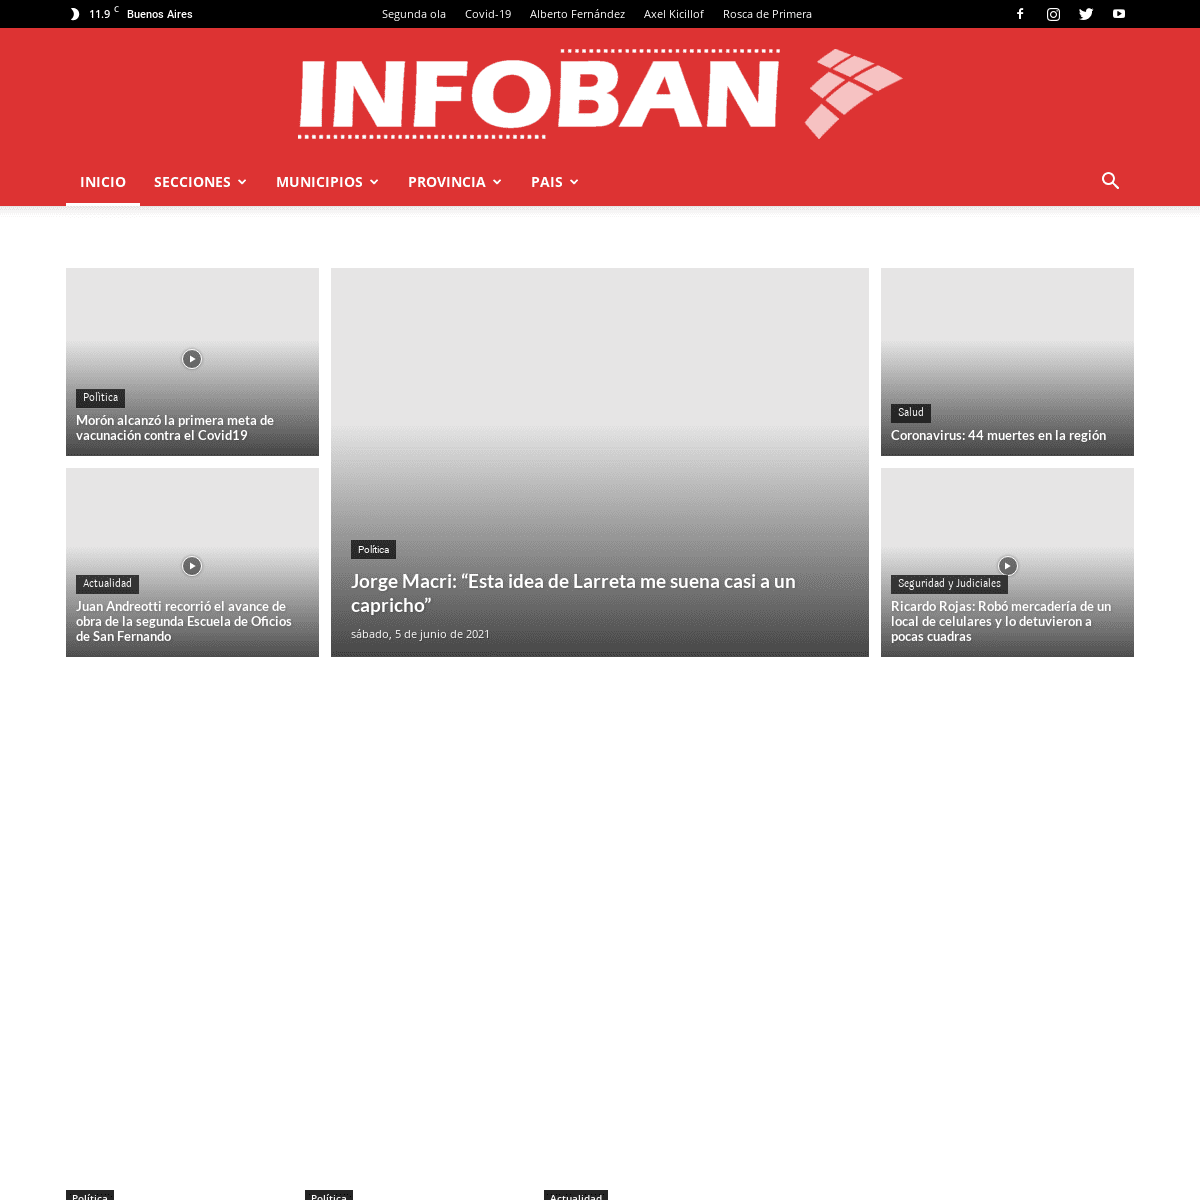 A complete backup of https://infoban.com.ar